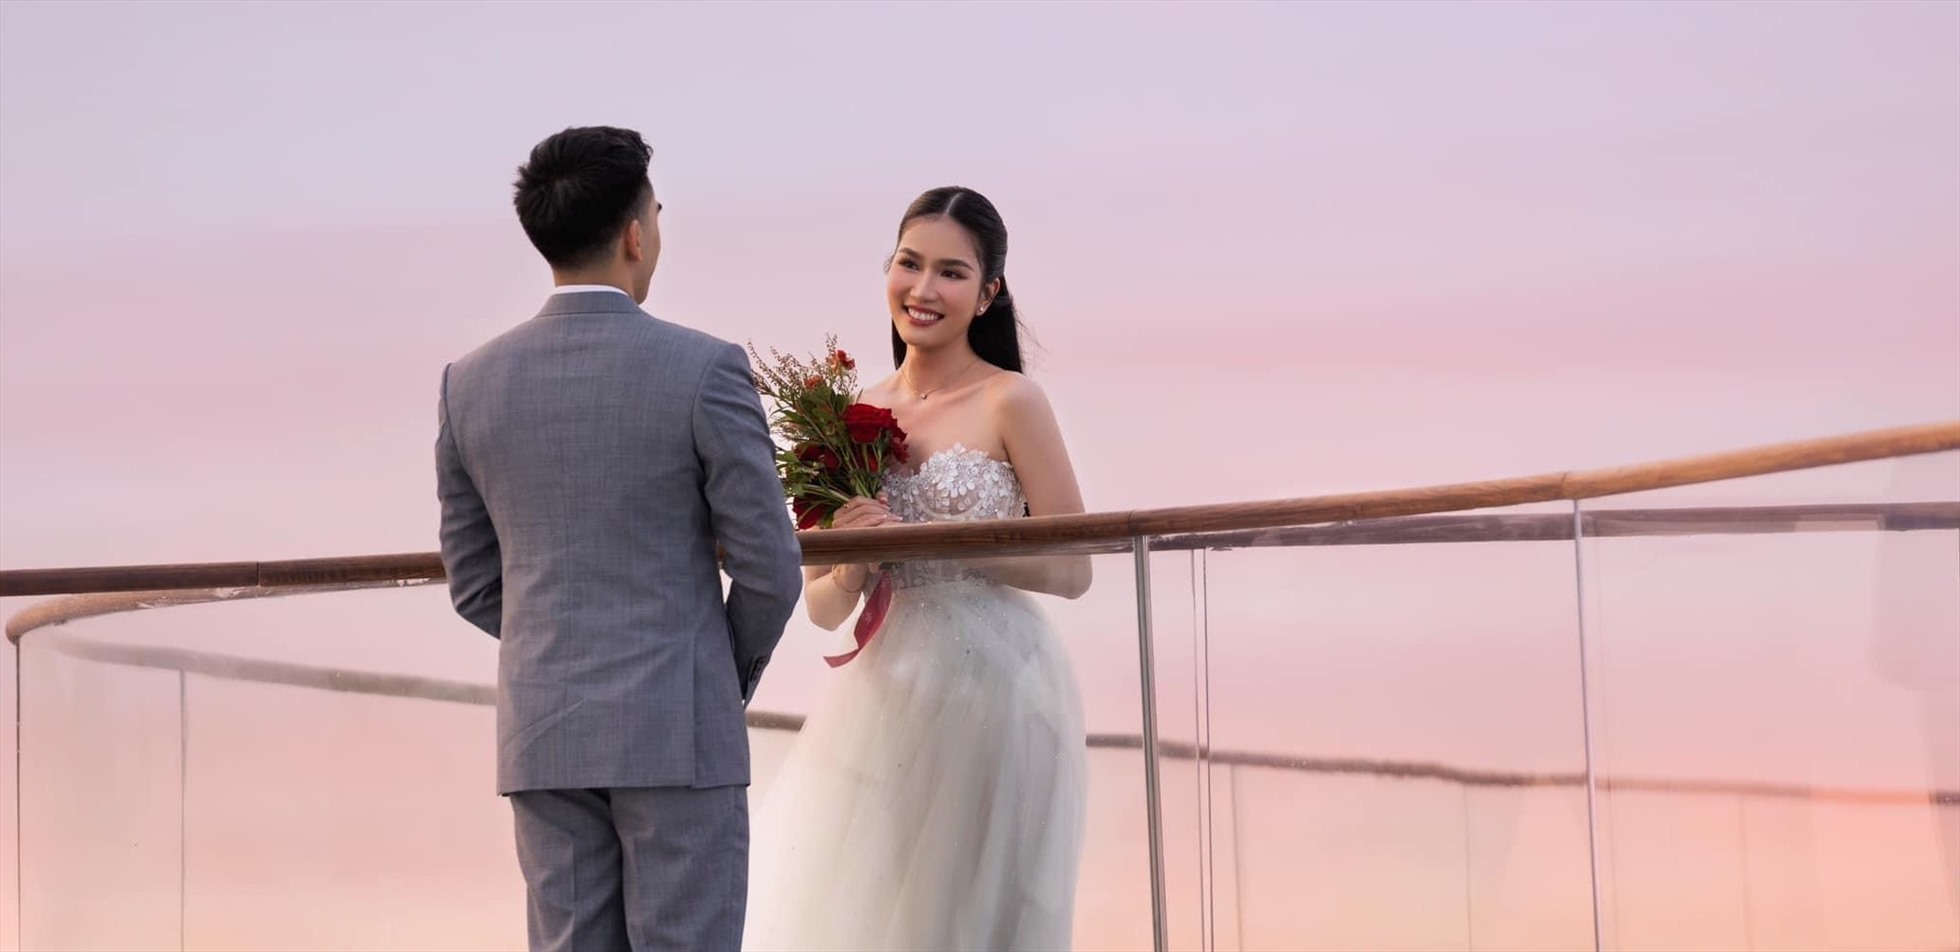 Cách đây không lâu, Á hậu Phương Anh đã được bạn trai doanh nhân cầu hôn lãng mạn tại Phú Quốc.